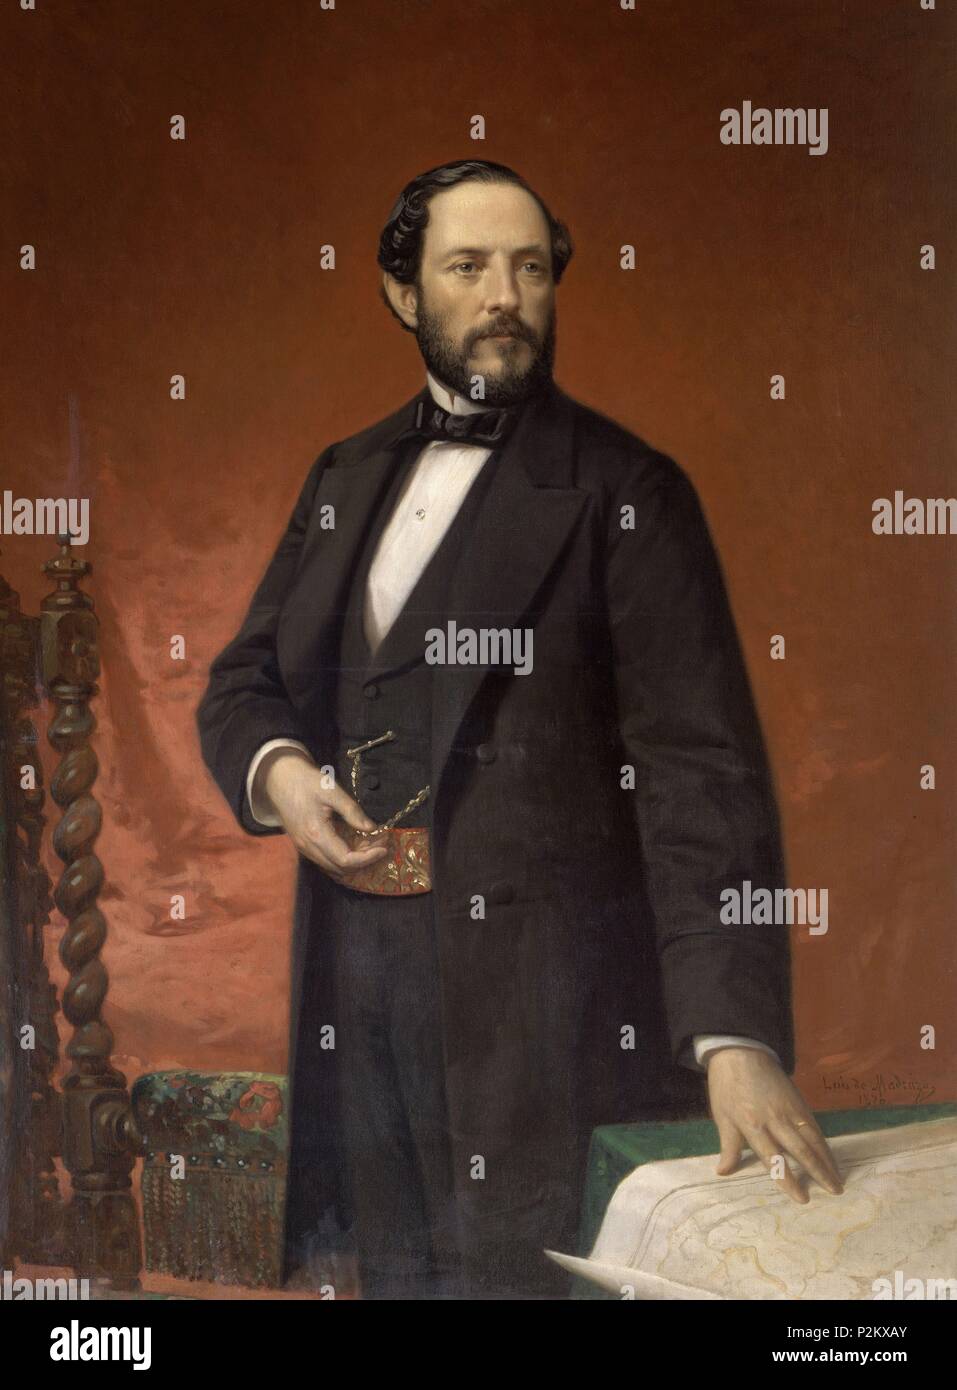 JUAN PRIM Y PRATS, MARQUES DE LOS CASTILLEJOS (1815-1870) - 1870 - L 1,00x0,75 - Nº INVENTARIO 91. Author: Luis de Madrazo (1825-1897). Location: SENADO-PINTURA, MADRID. Stock Photo